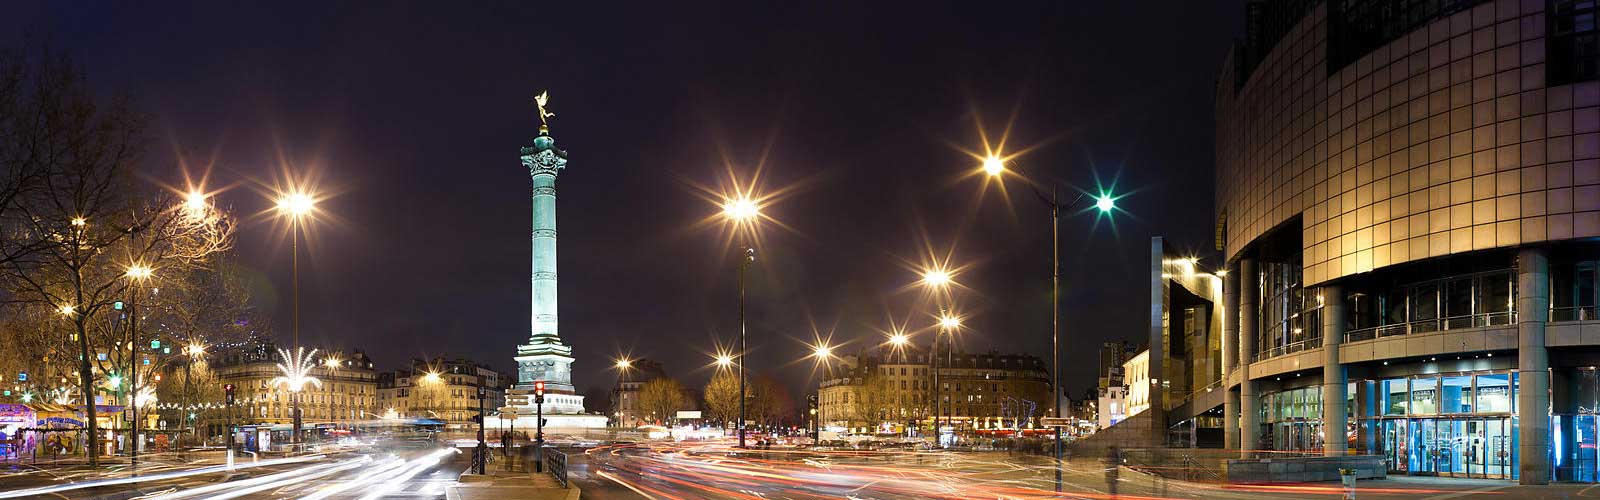 Hoteles Place de la Bastille París